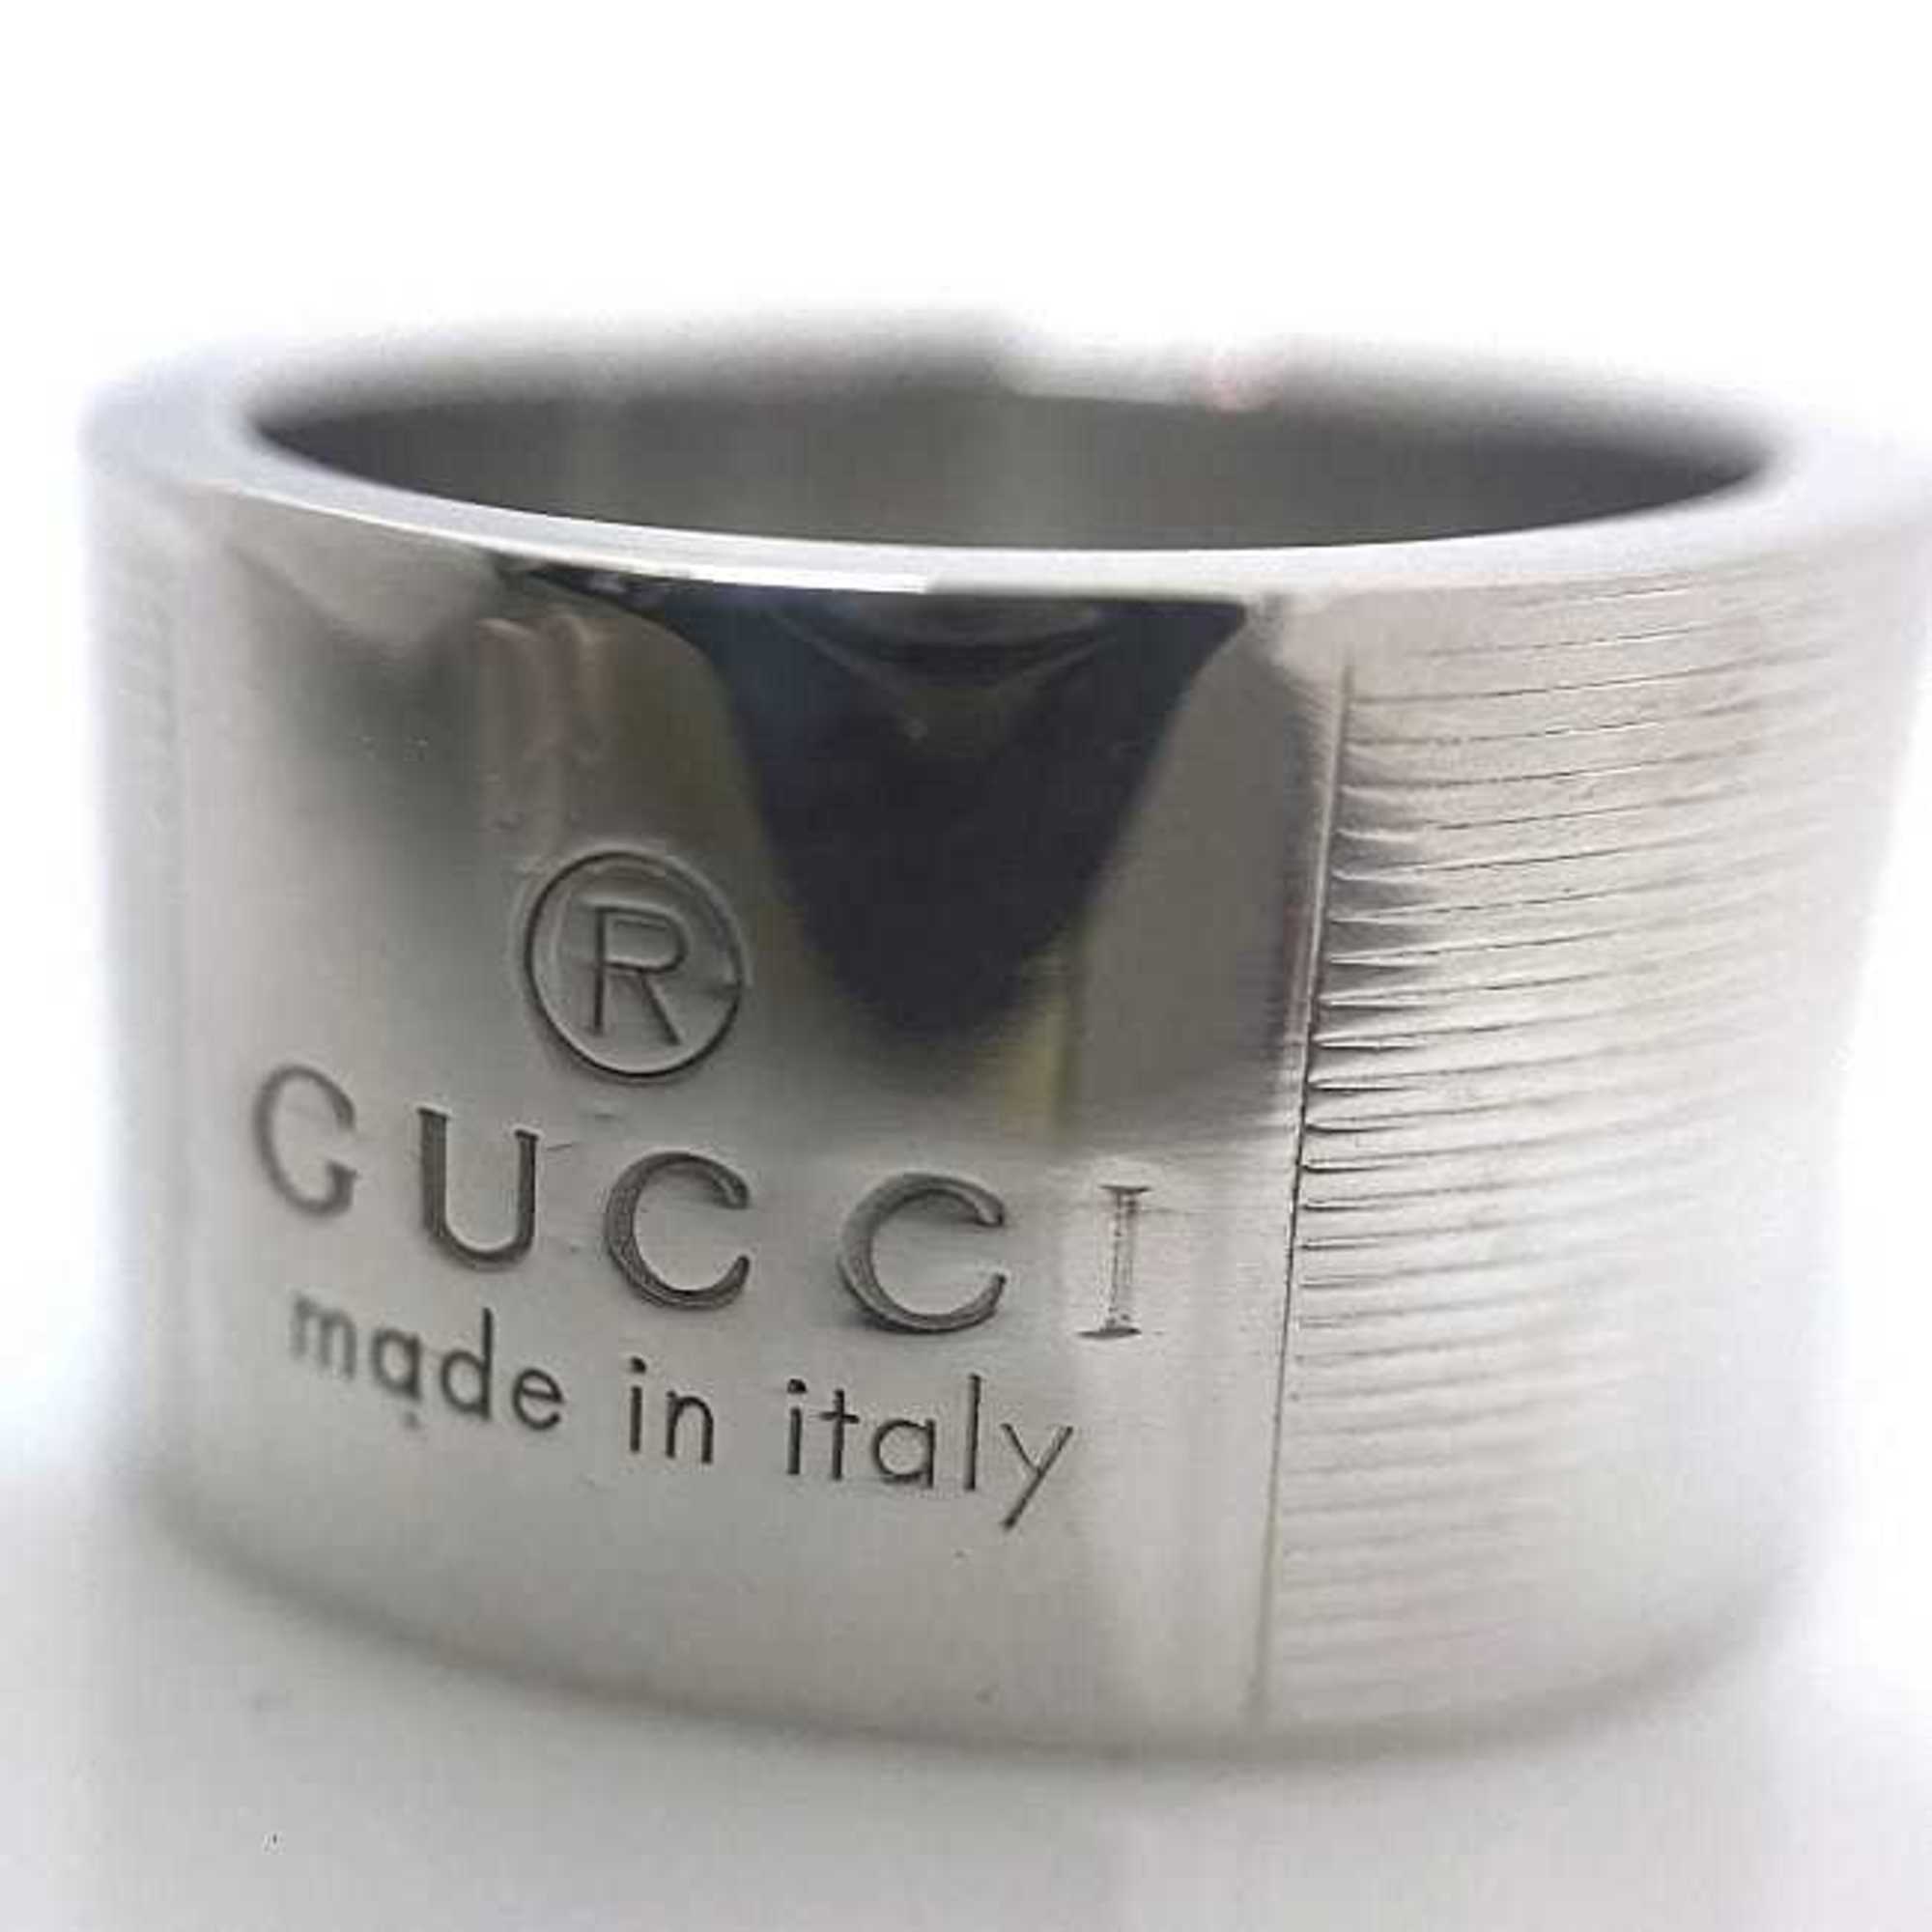 Gucci Ring Silver No. 11 925 GUCCI Trademark Fashion Accessory